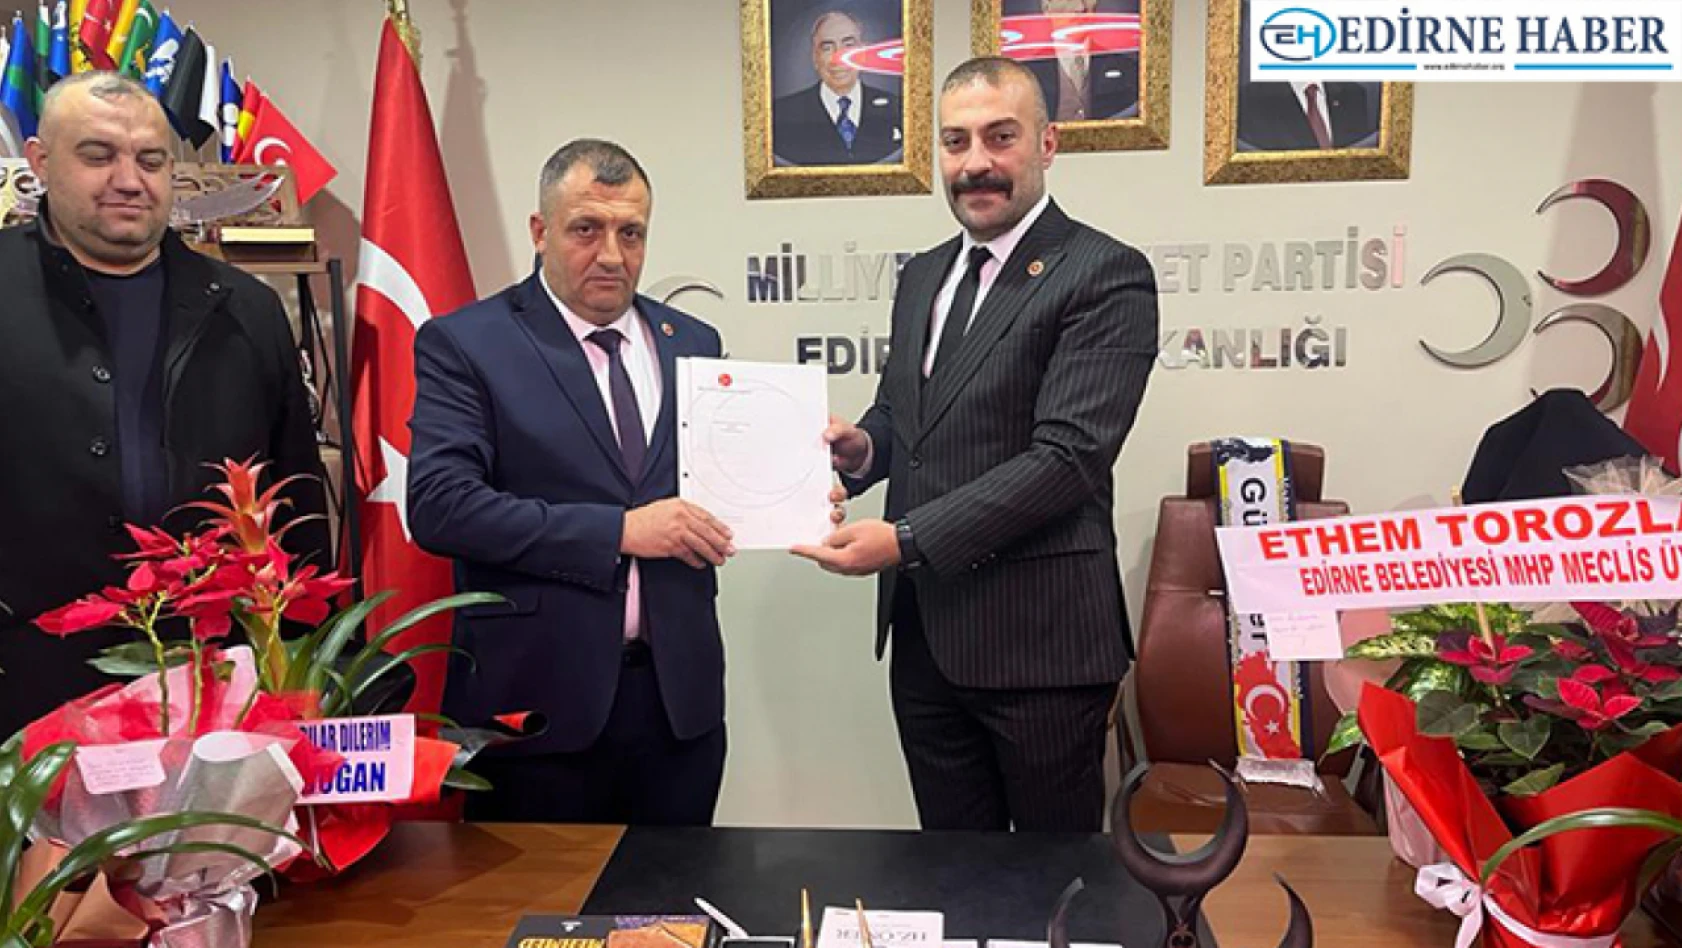 Edirneli esnaf Güler, MHP'den meclis üyeliği için başvuru yaptı